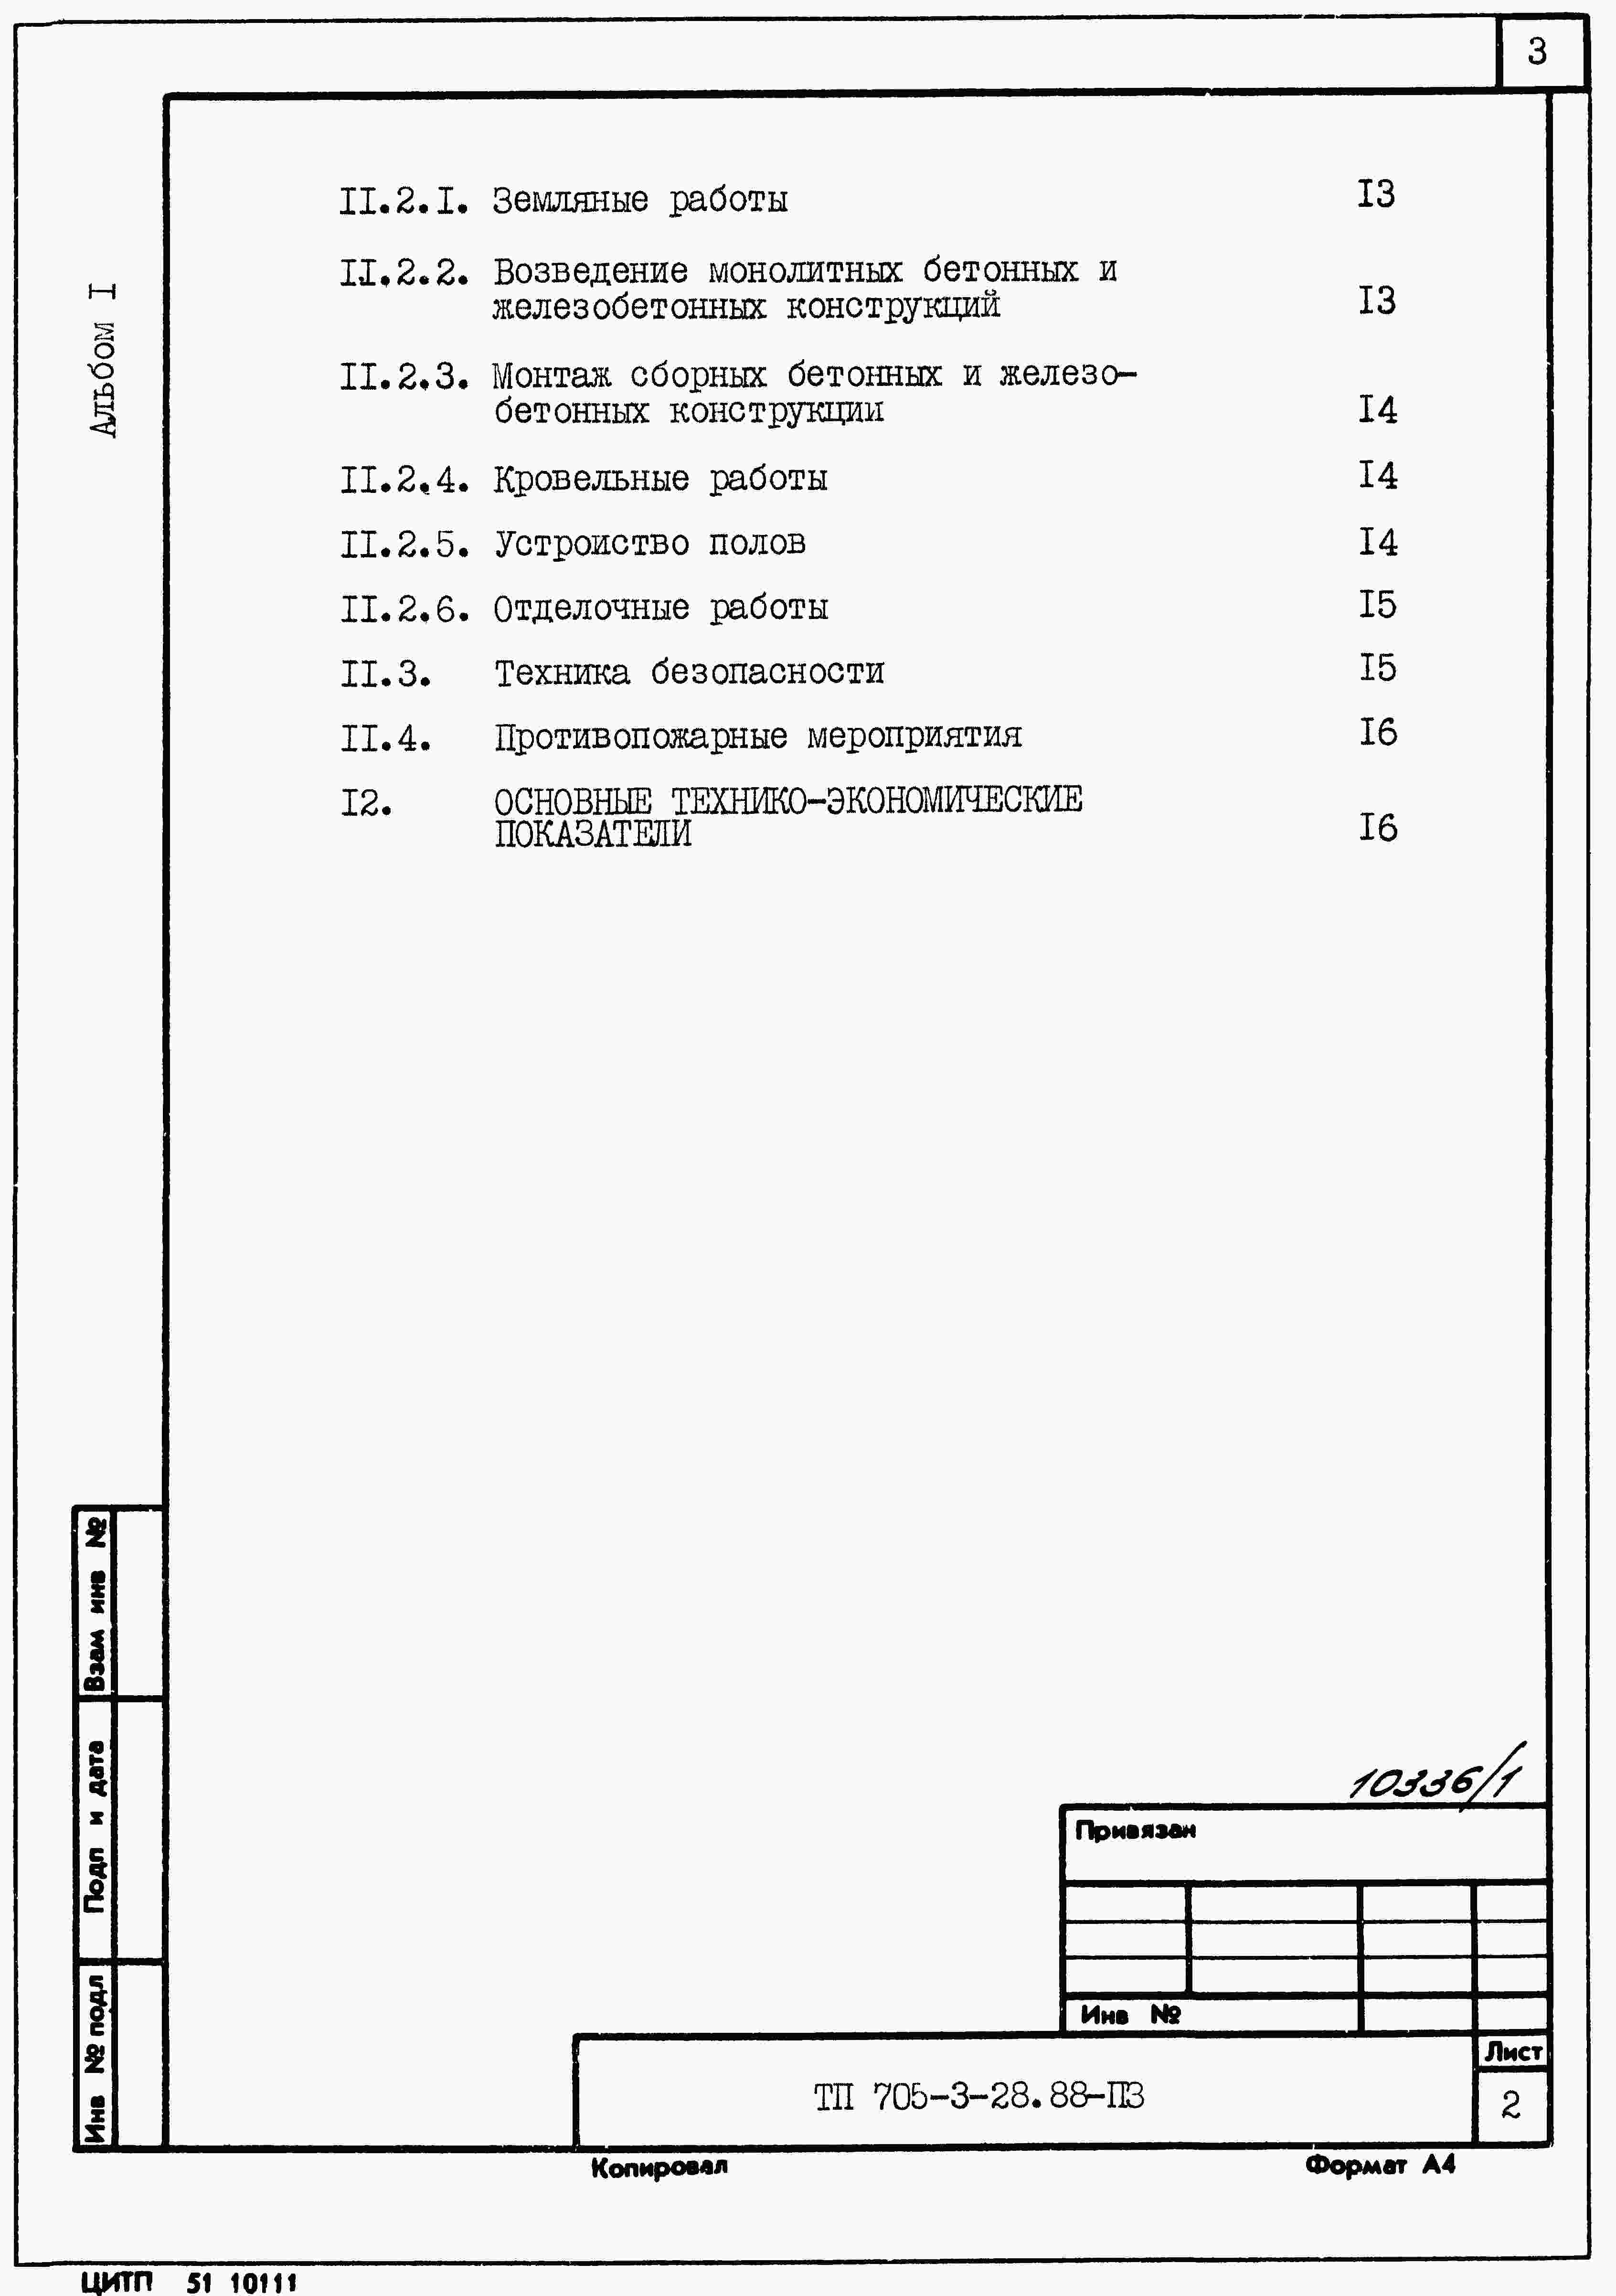 Состав альбома Типовой проект 705-3-35.88Альбом 1 Применен из ТП 705-3-28.88 Общая пояснительная записка.